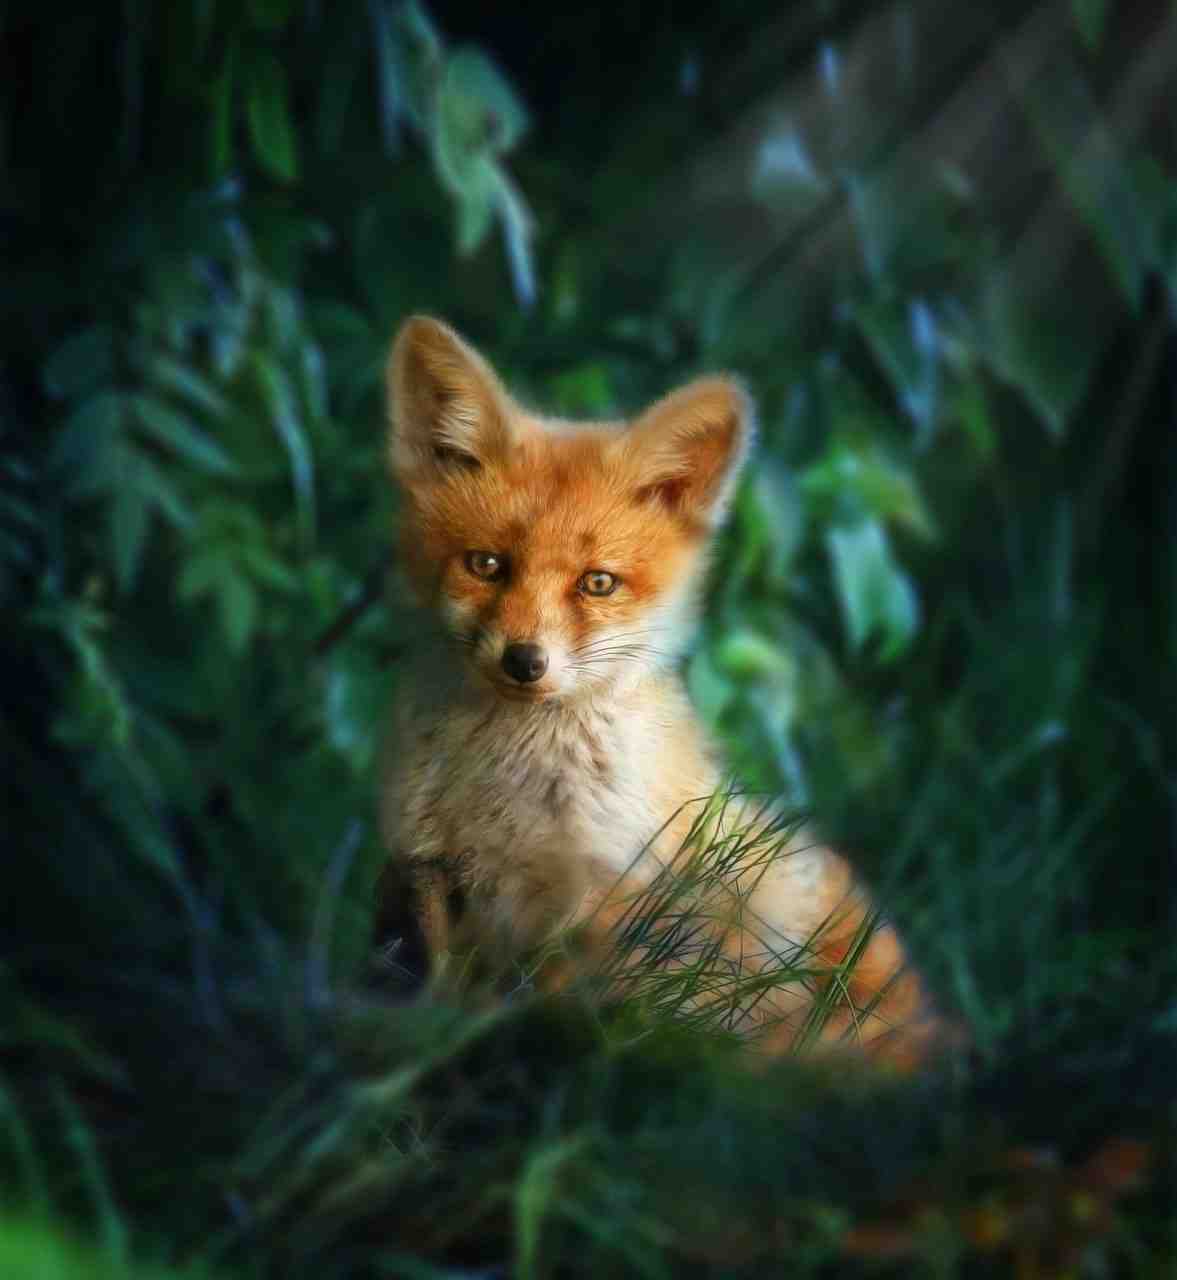 le renard roux, fox, nature